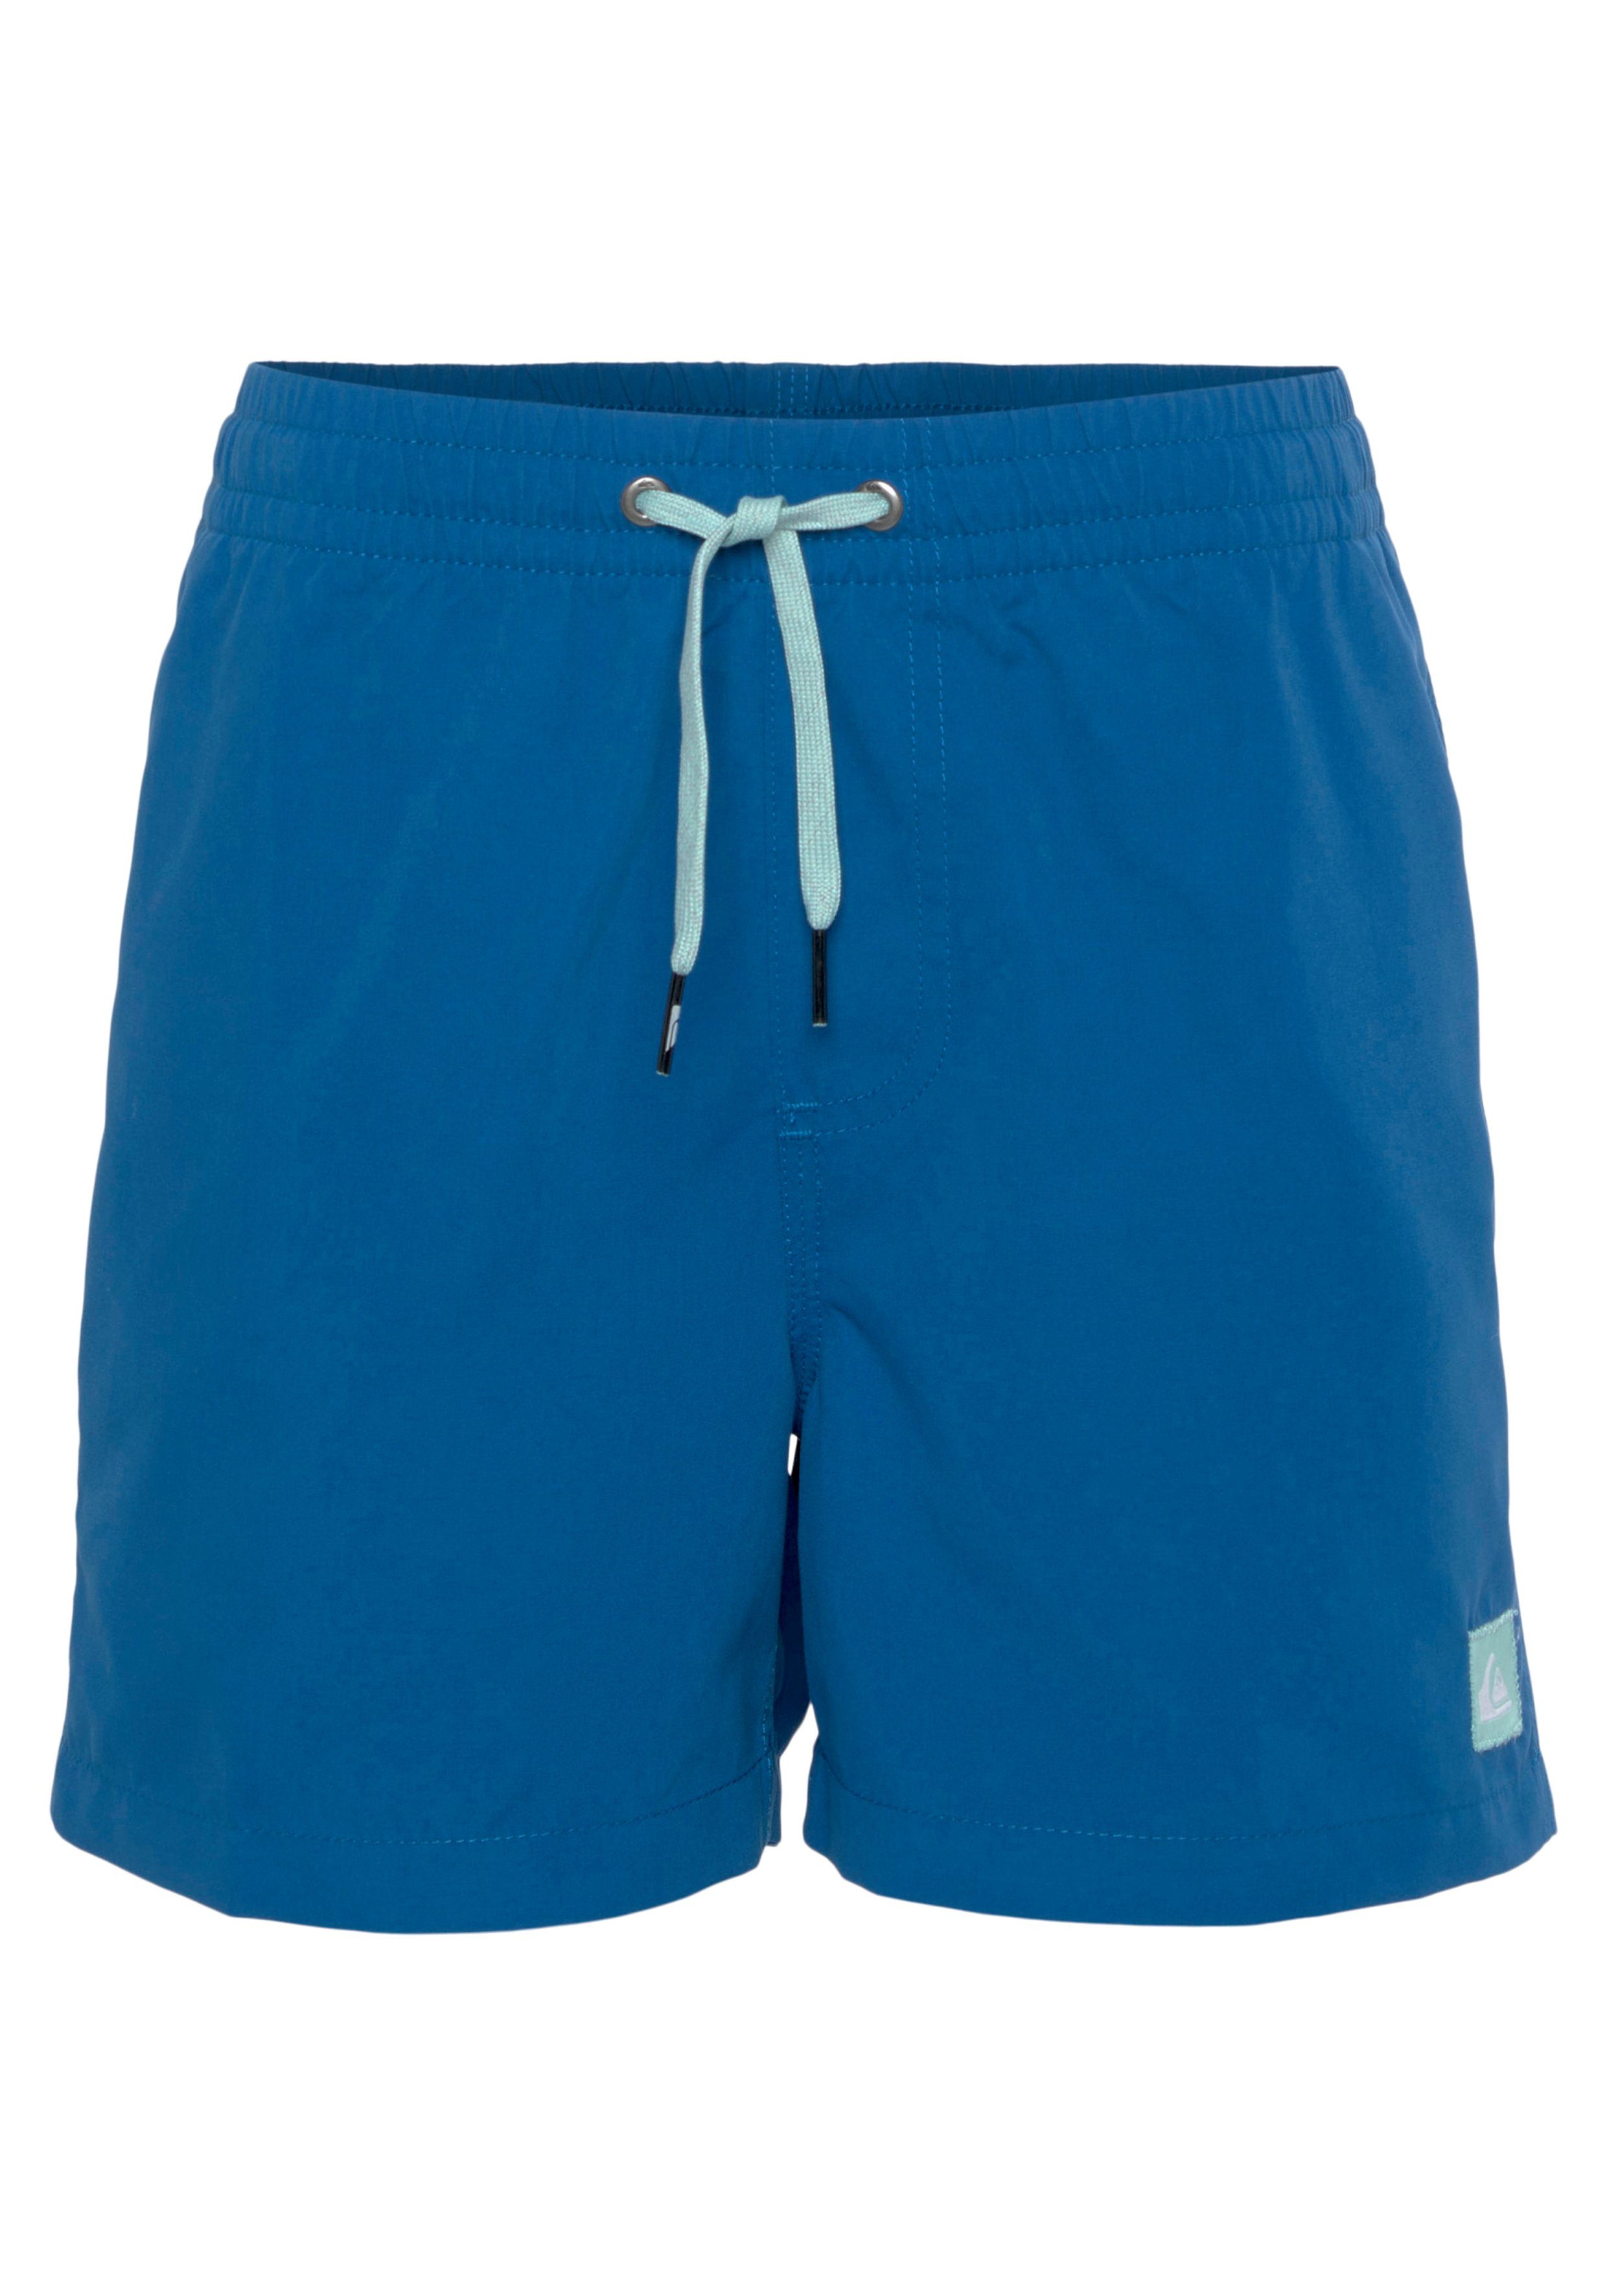 blue Badeshorts Swim Beach Quiksilver und brt0-snorkel Jungen Shorts